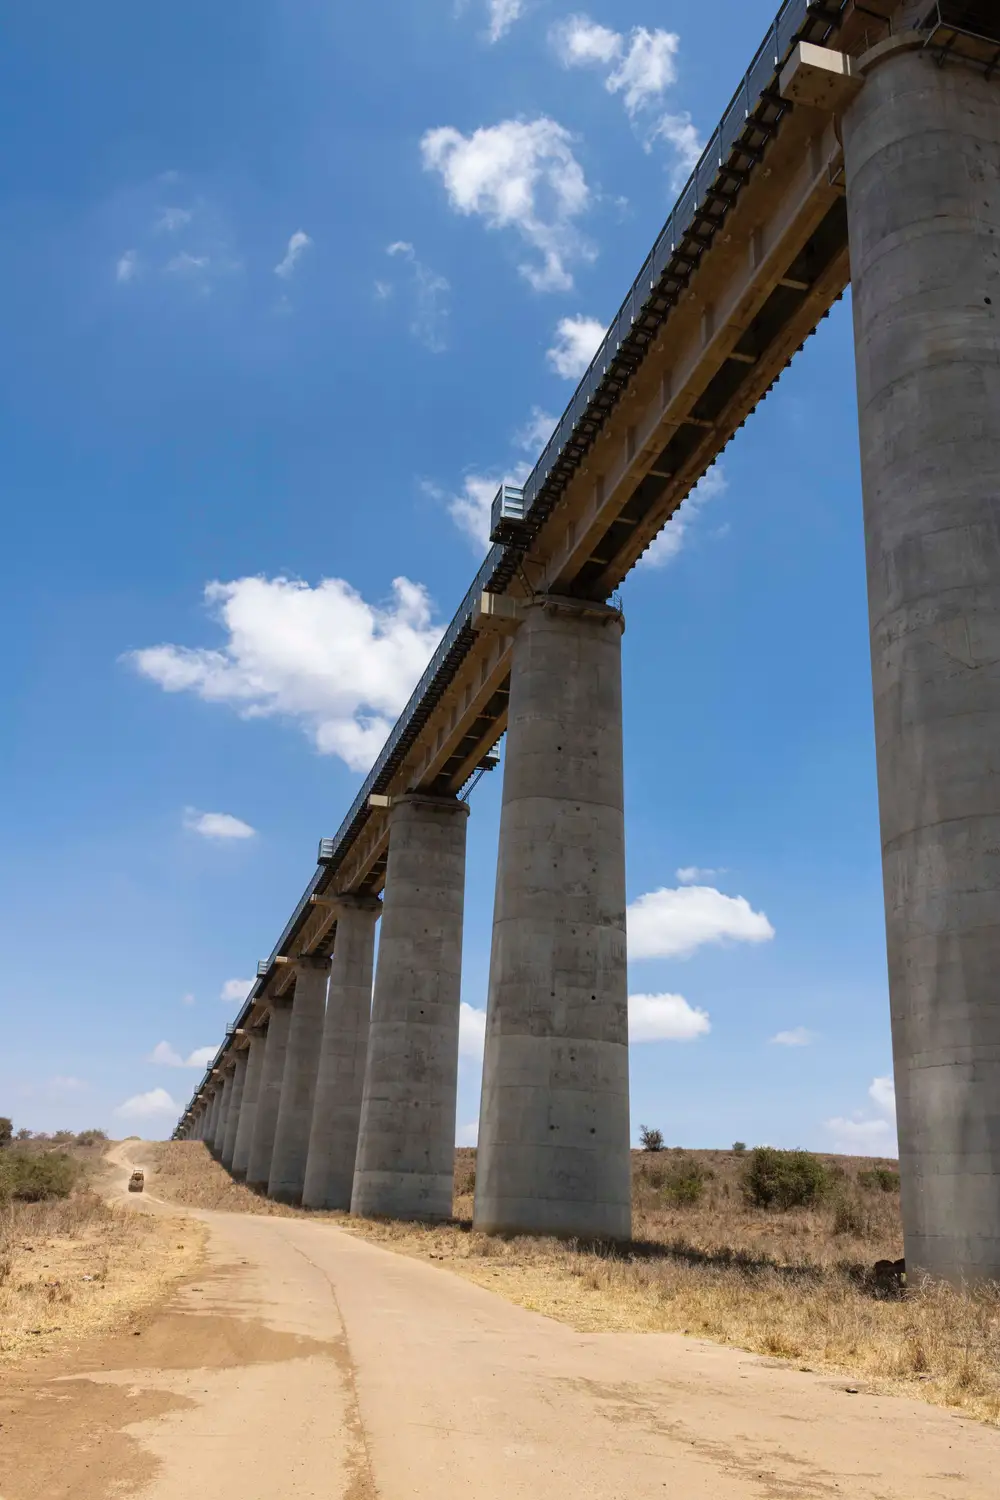 A bridge in Africa